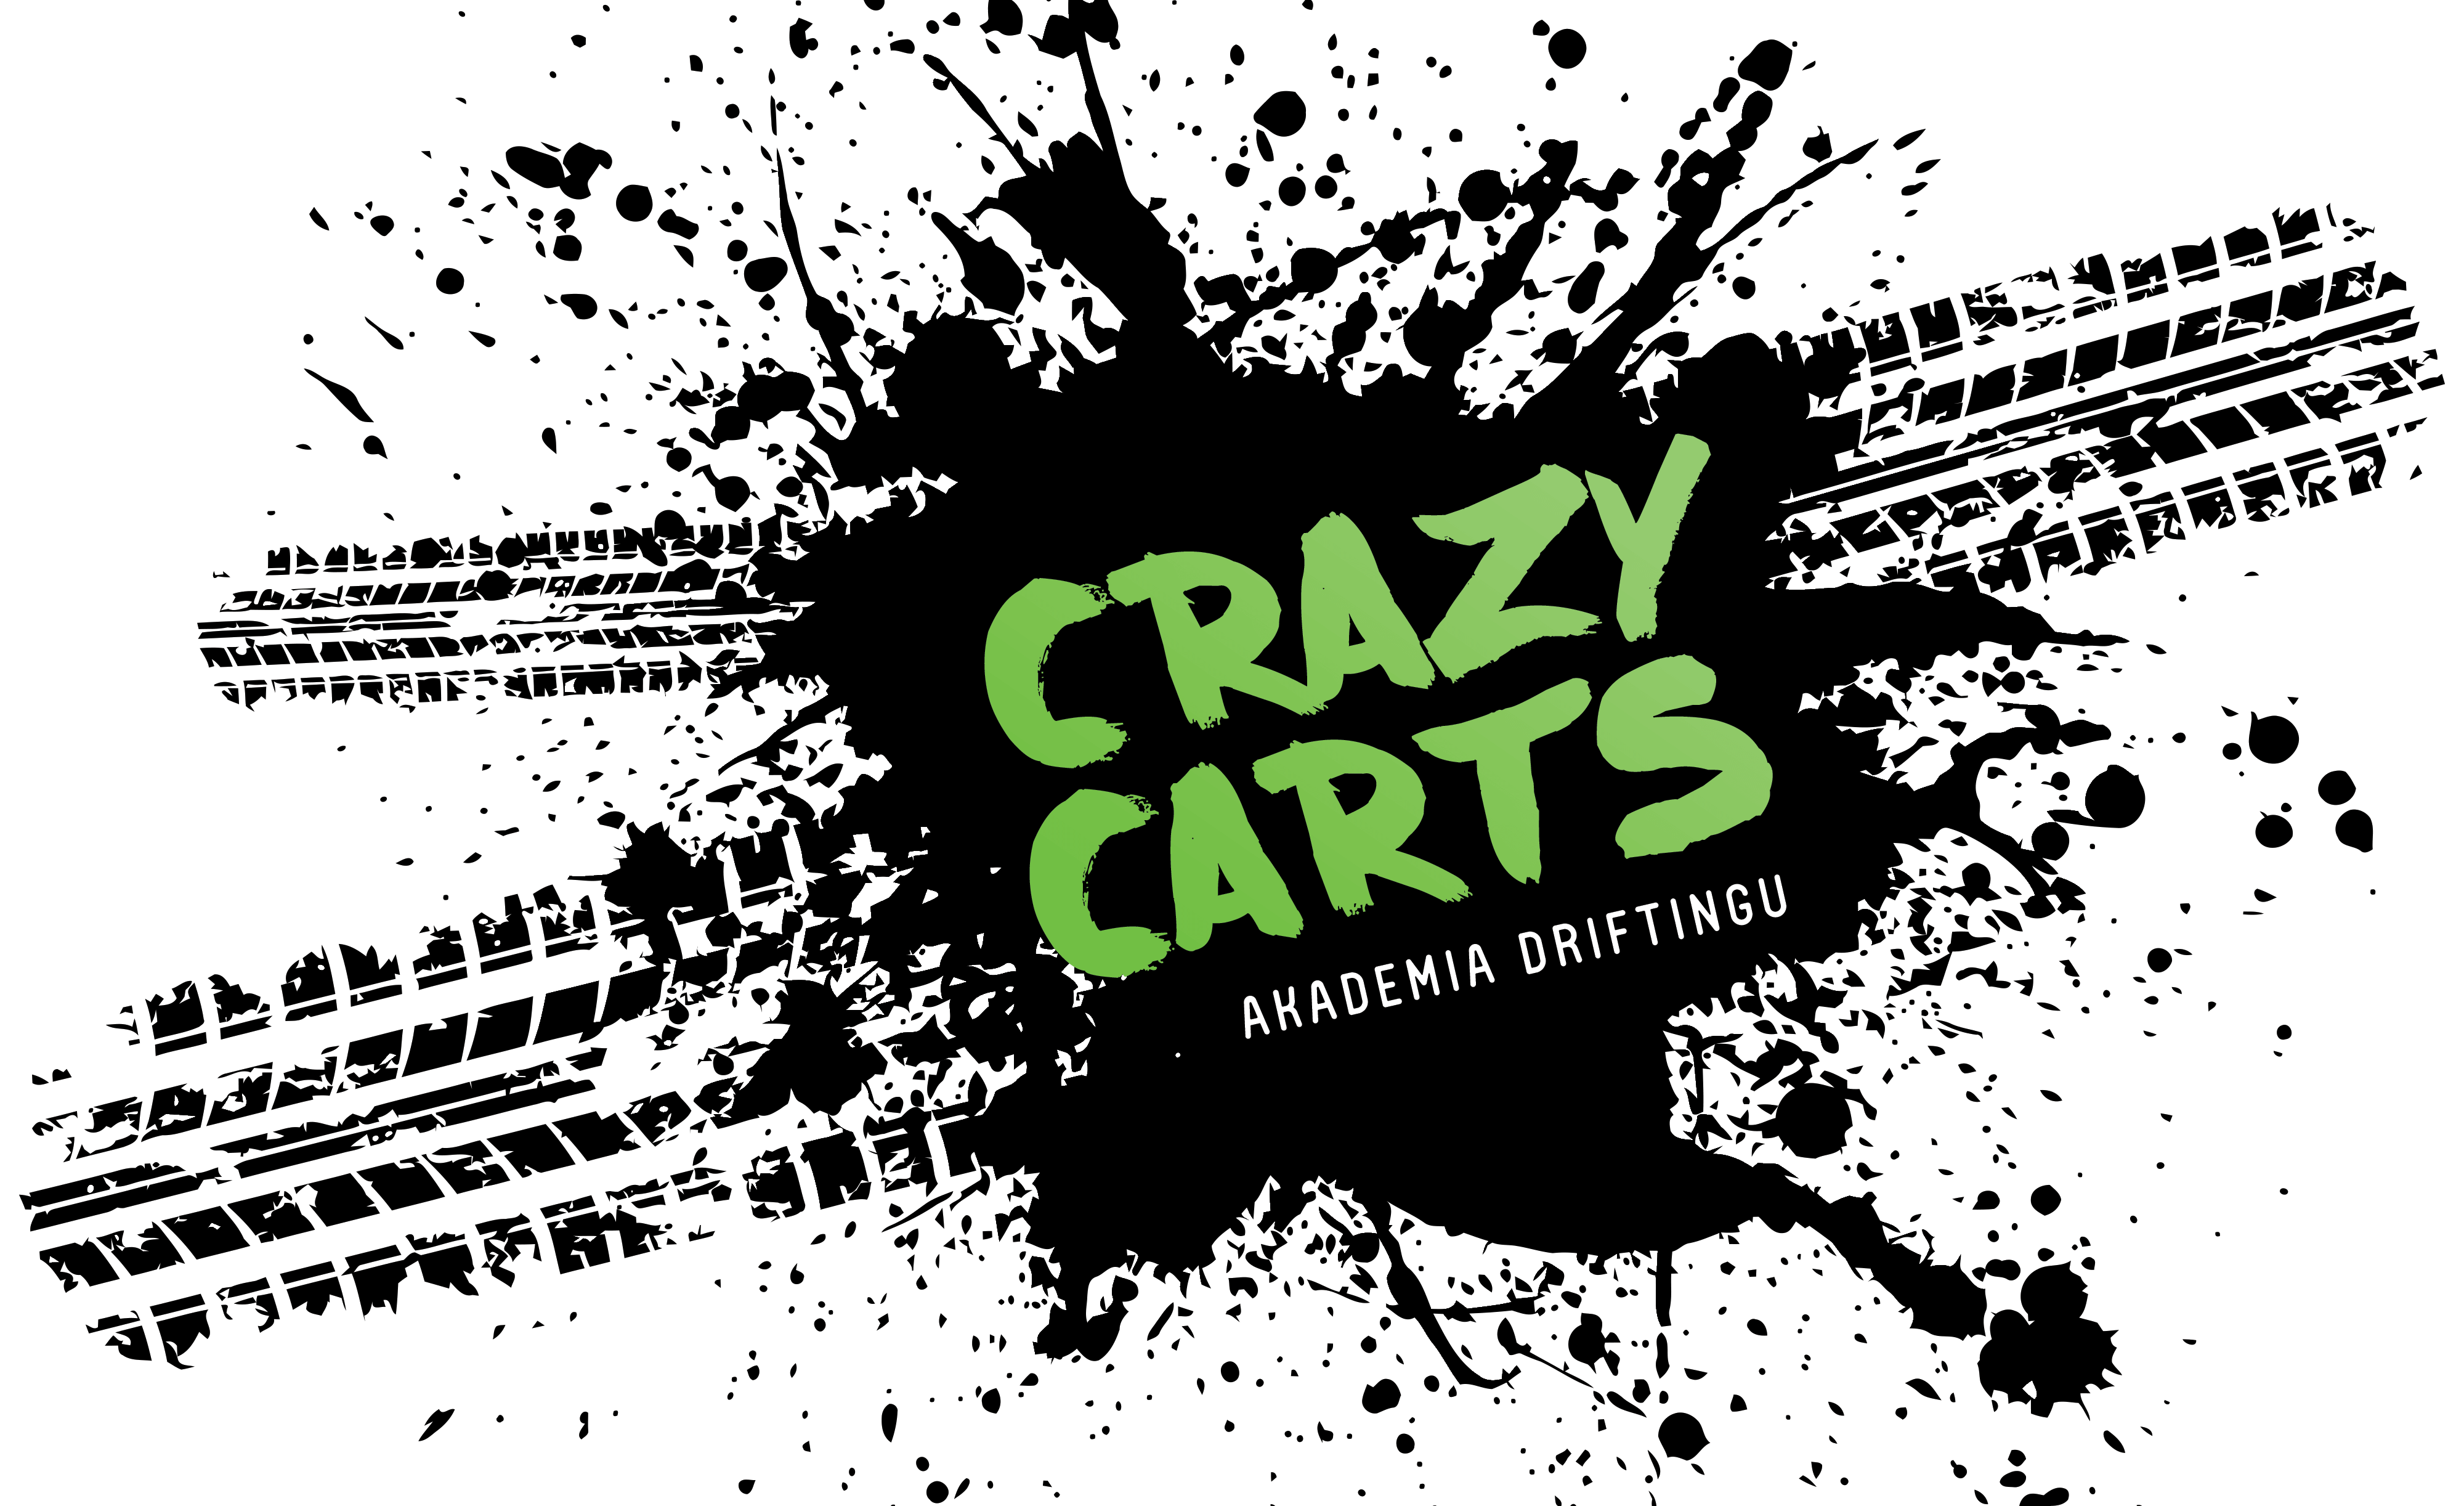 Crazy Carts